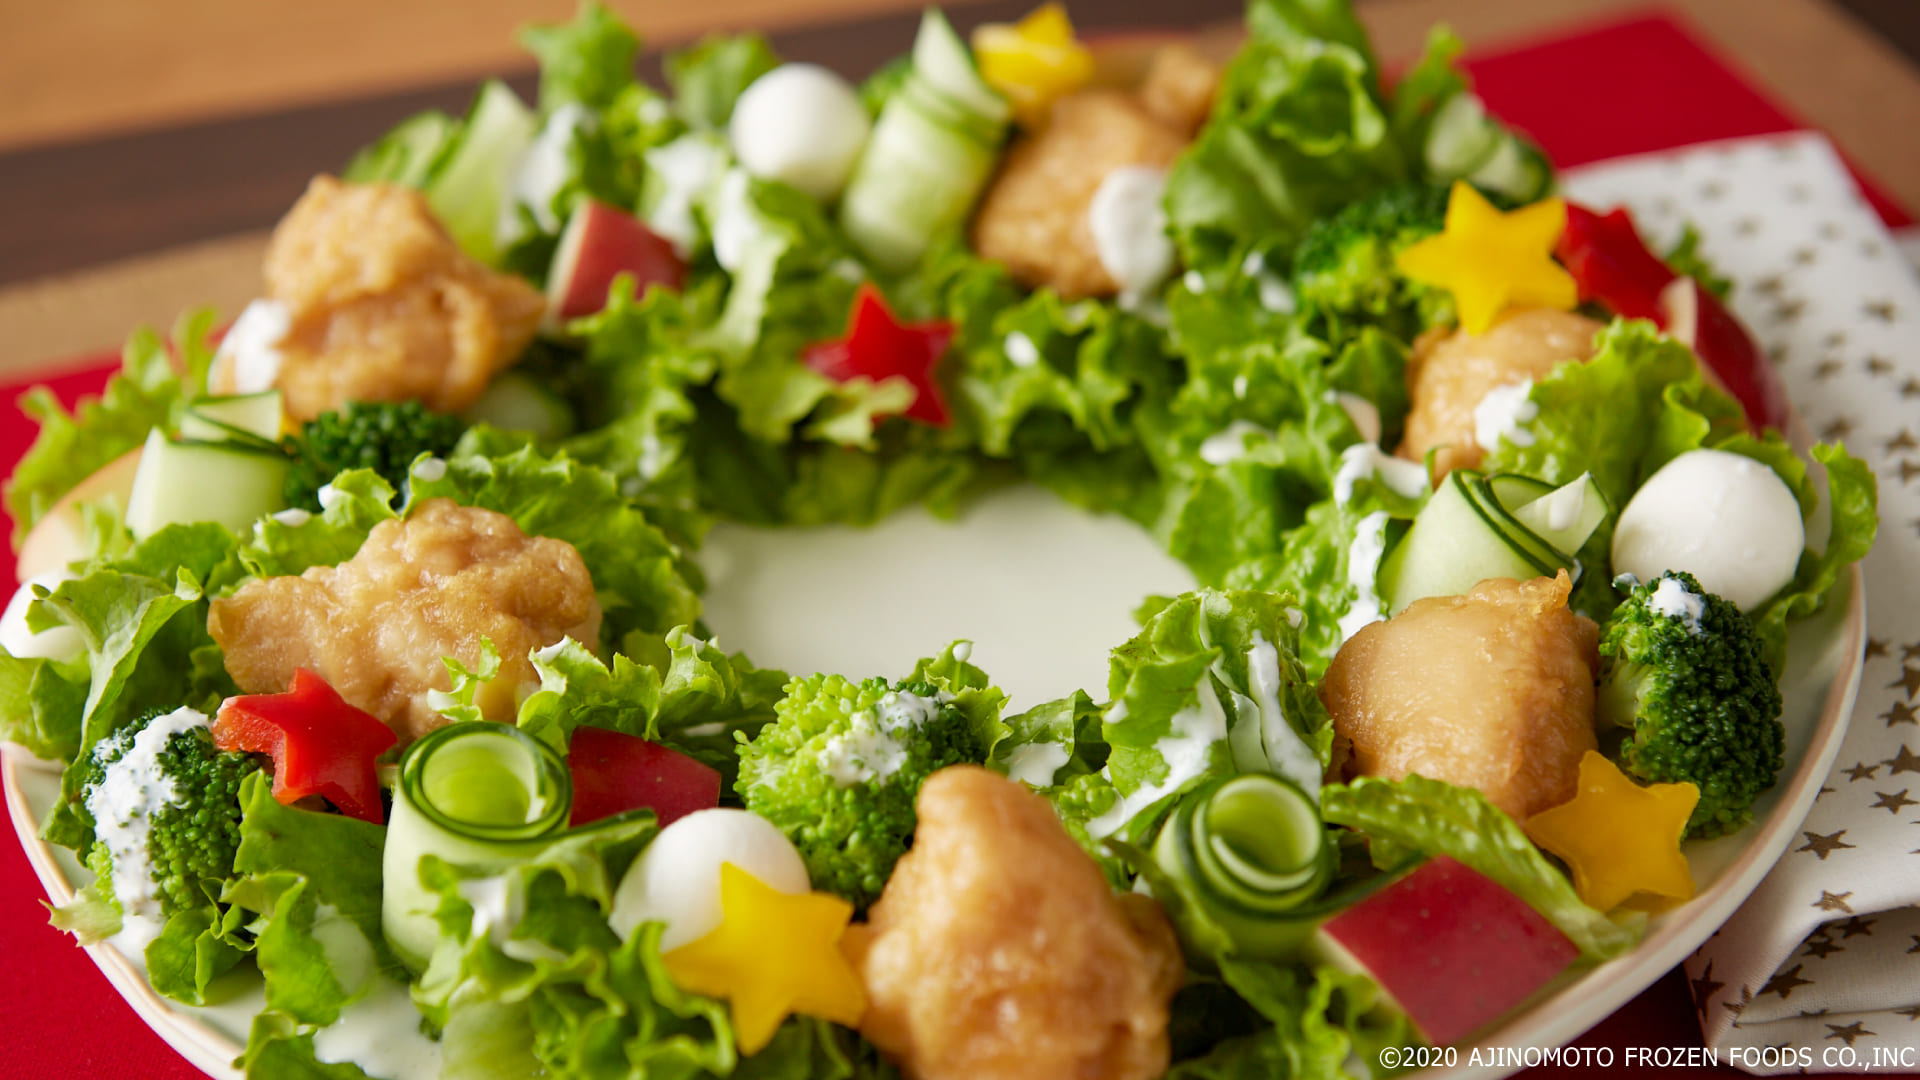 Karaage X'mas Wreath-like Salad